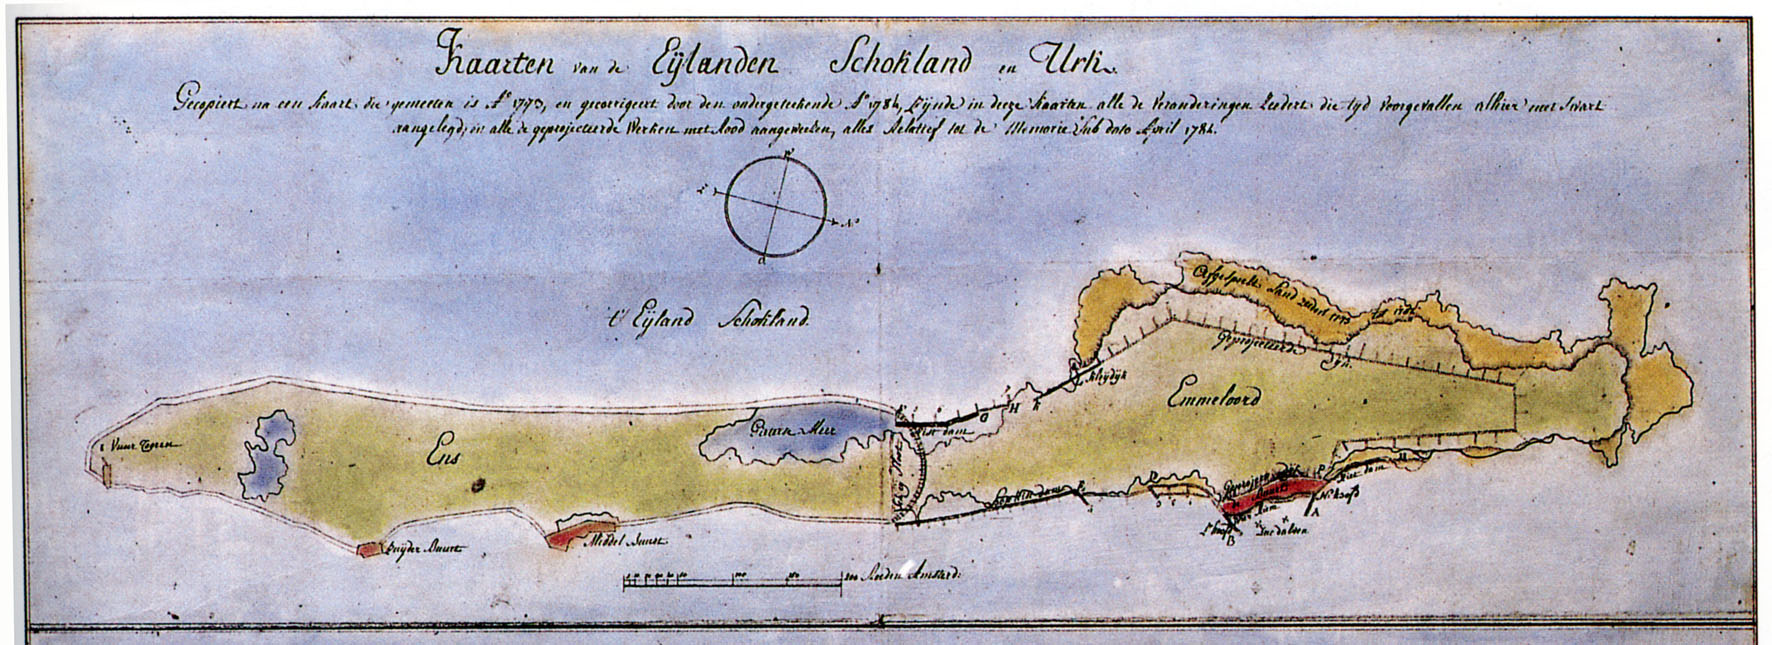 Basiskaart (uitsnede Schokland) uit 1770 met daarin aangegeven het ‘Gieterse Meer’ en de veranderingen van de werkzaamheden per april 1782.